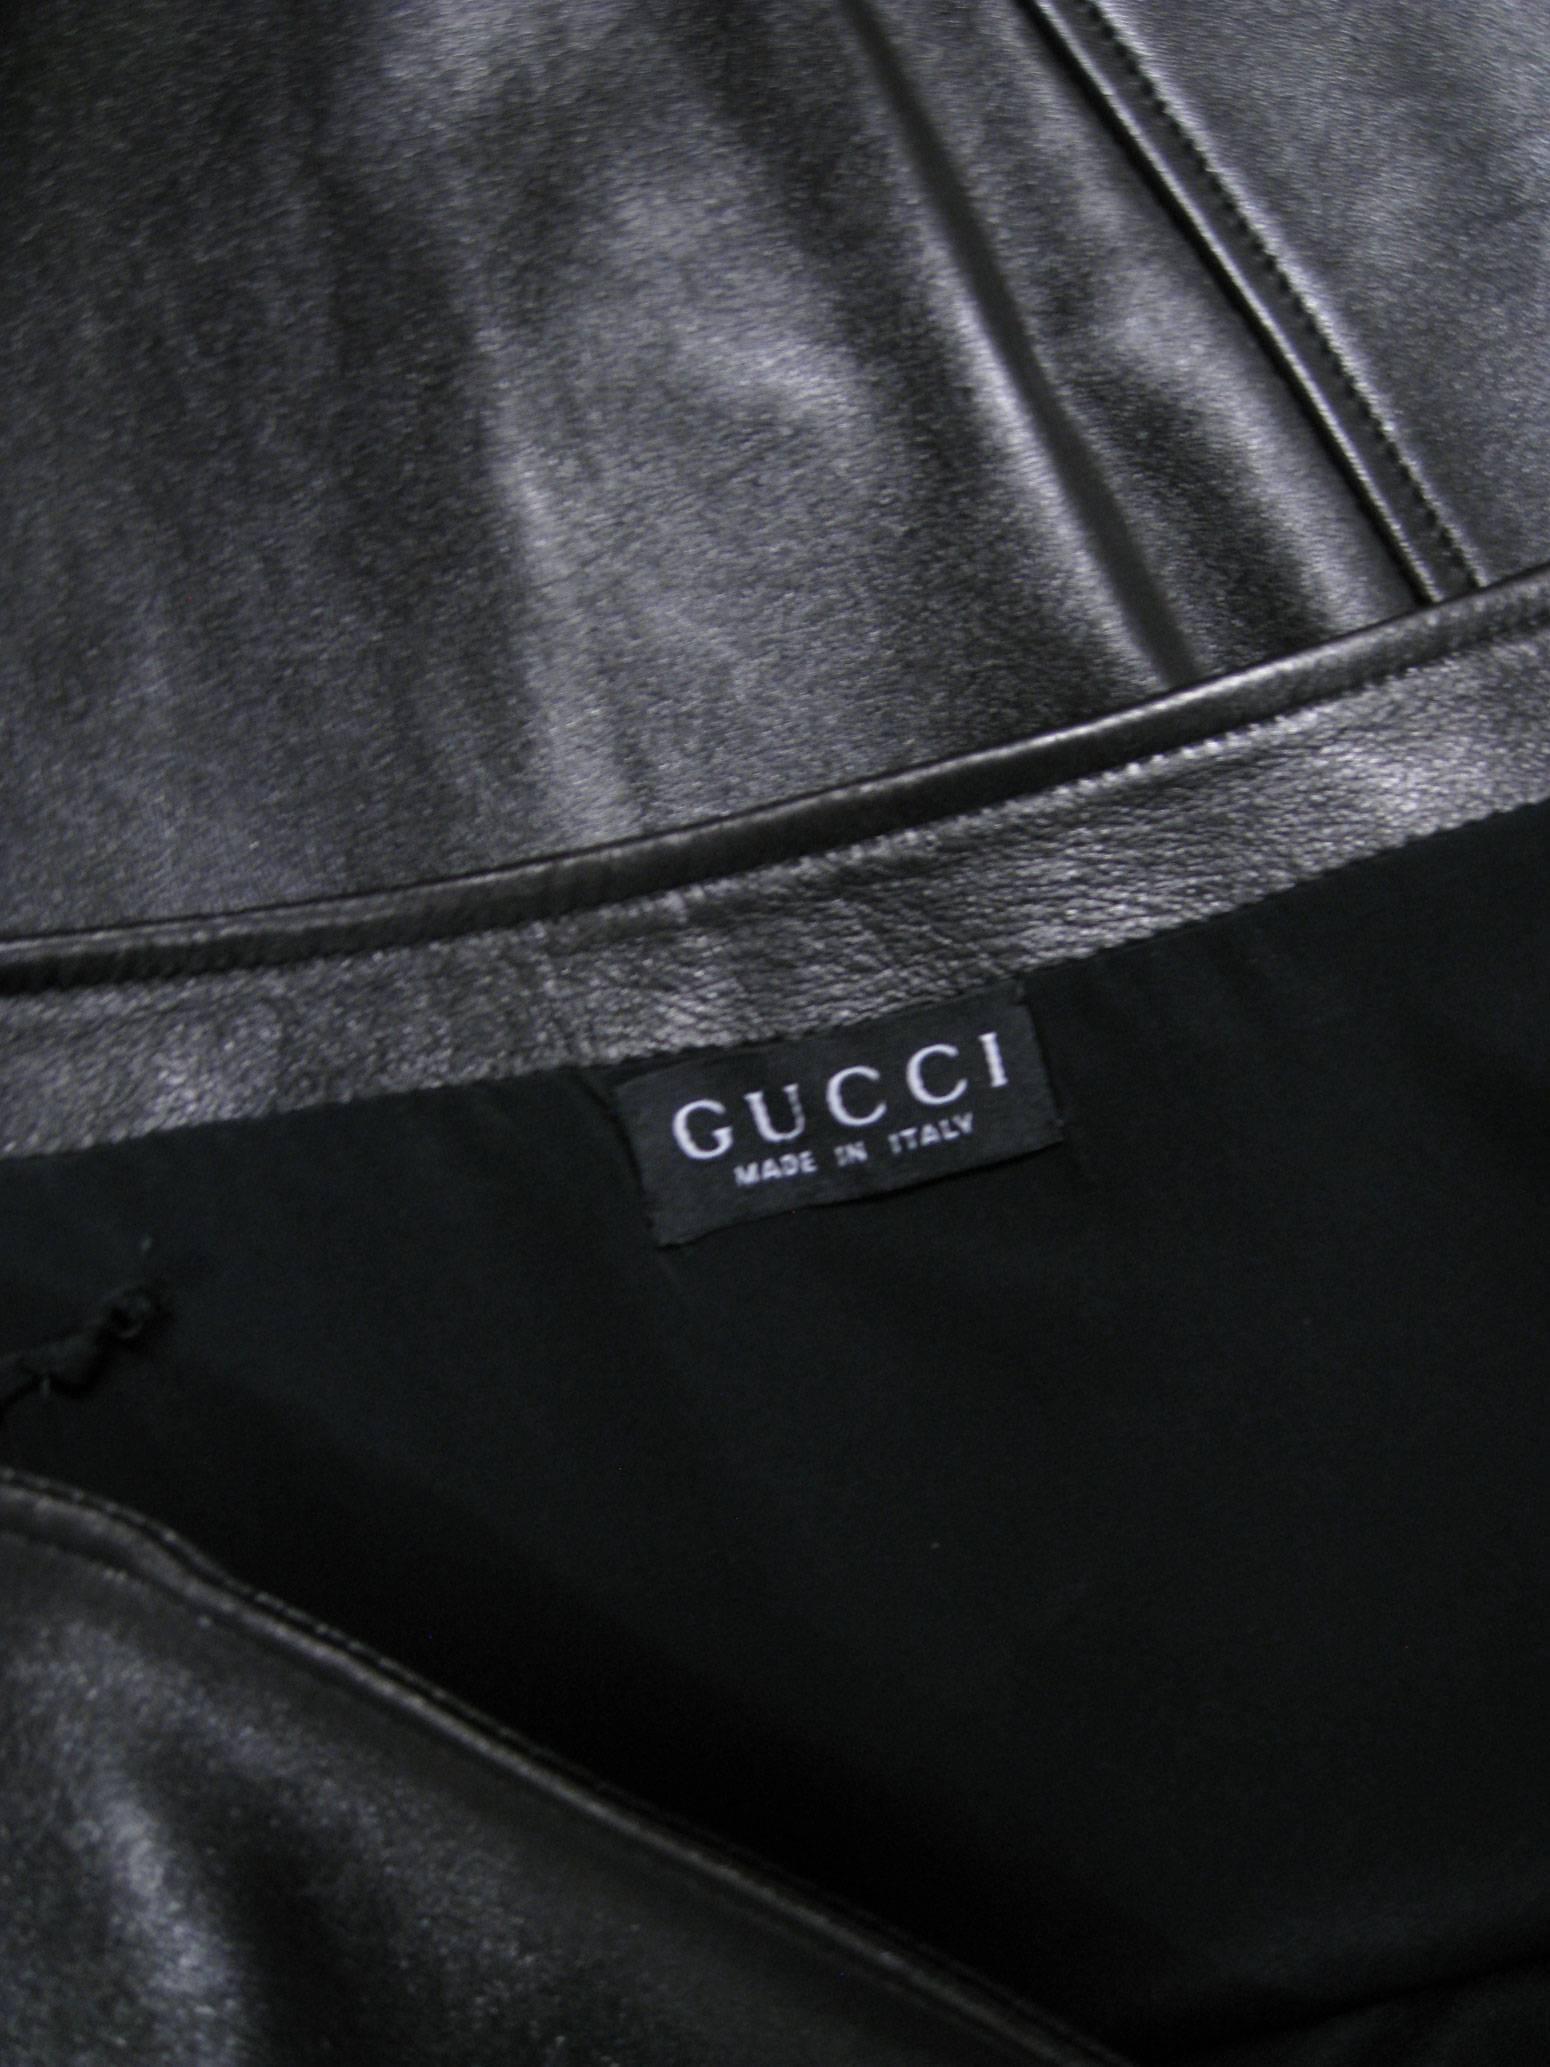  Gucci - Jupe fourreau fendue en cuir Pour femmes 